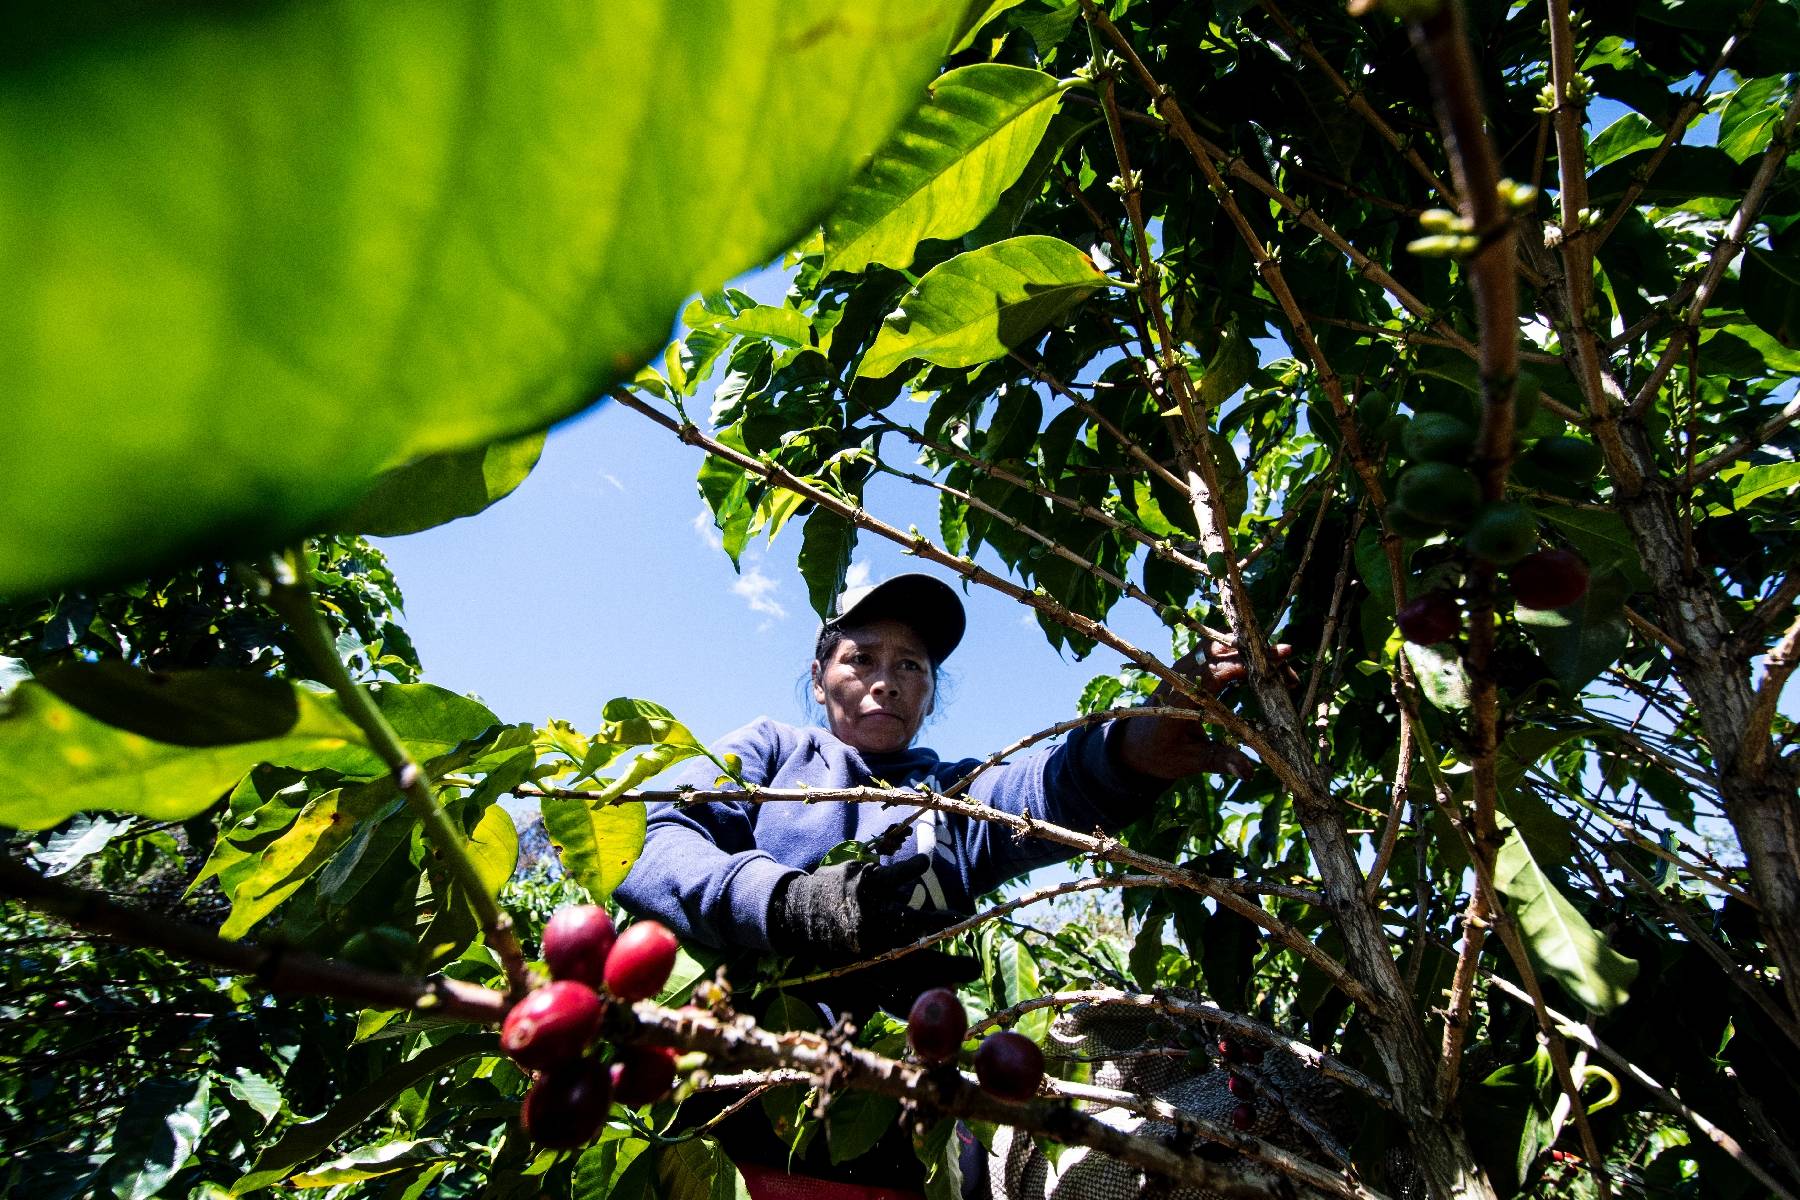 Amérique centrale: l'exode migratoire entraîne une pénurie de main-d'oeuvre chez les caféiculteurs